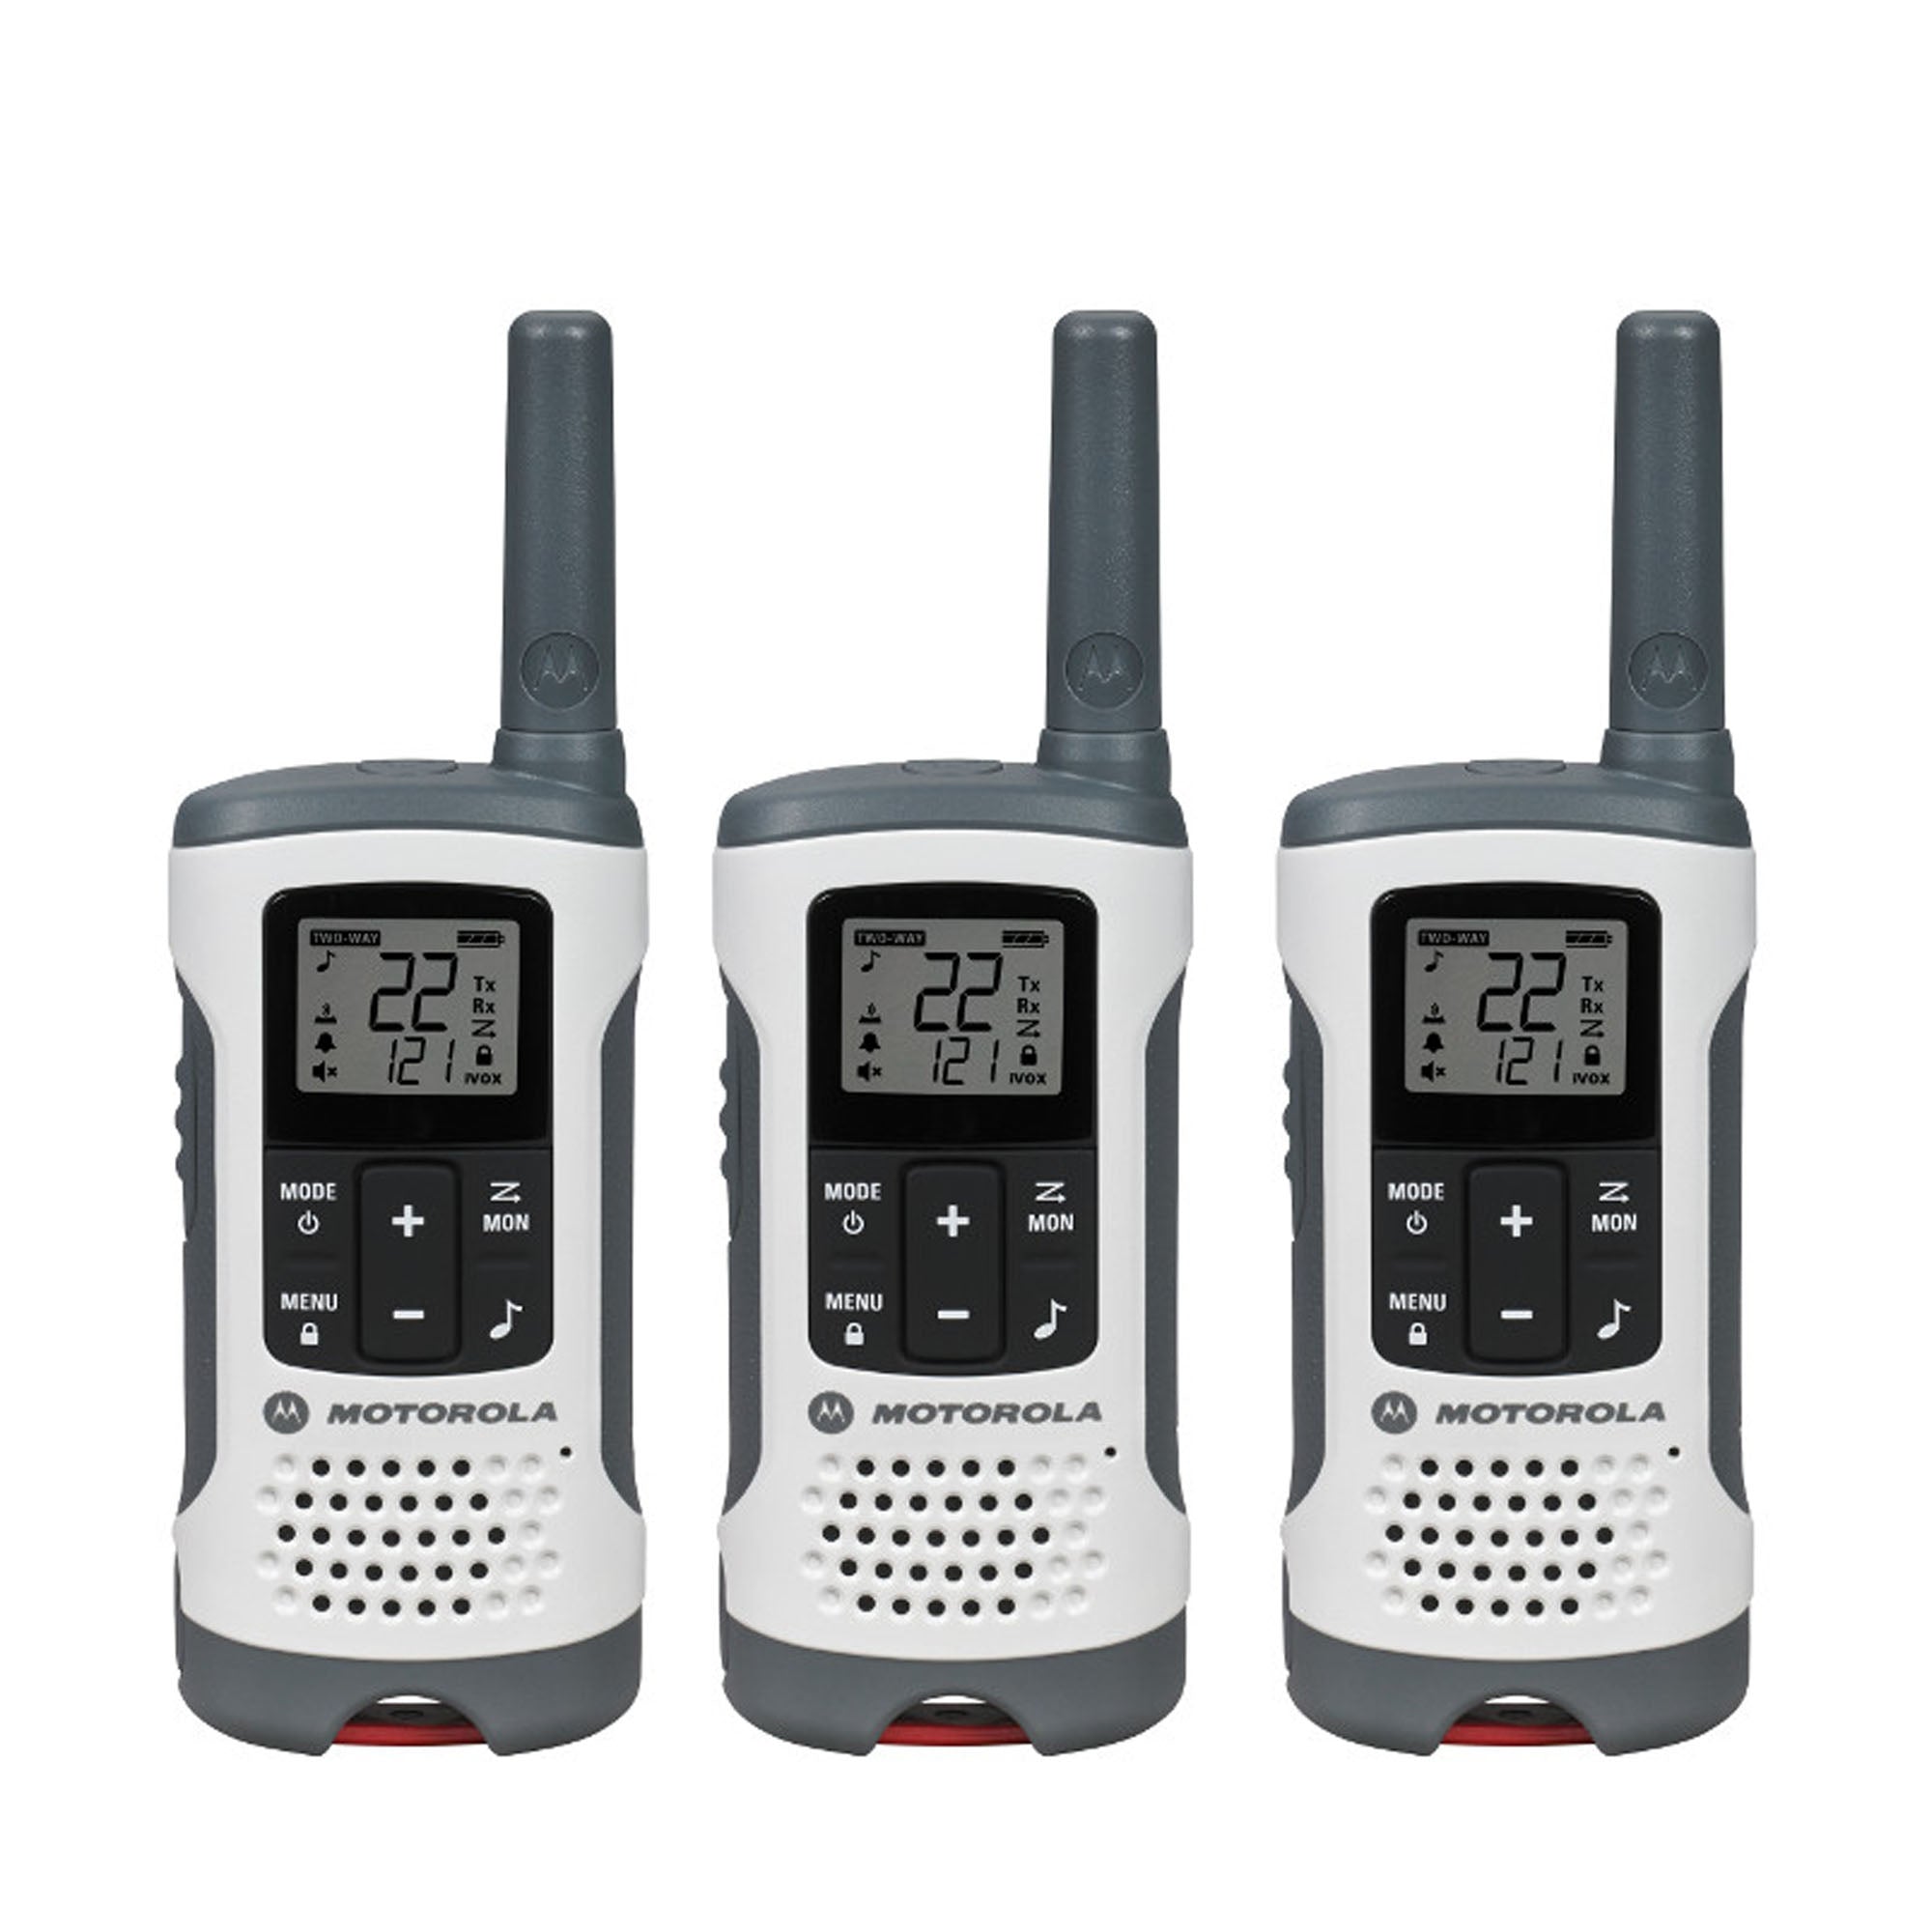 12 Pack of Motorola CLS1110 Two Way Radio Walkie Talkies - 4